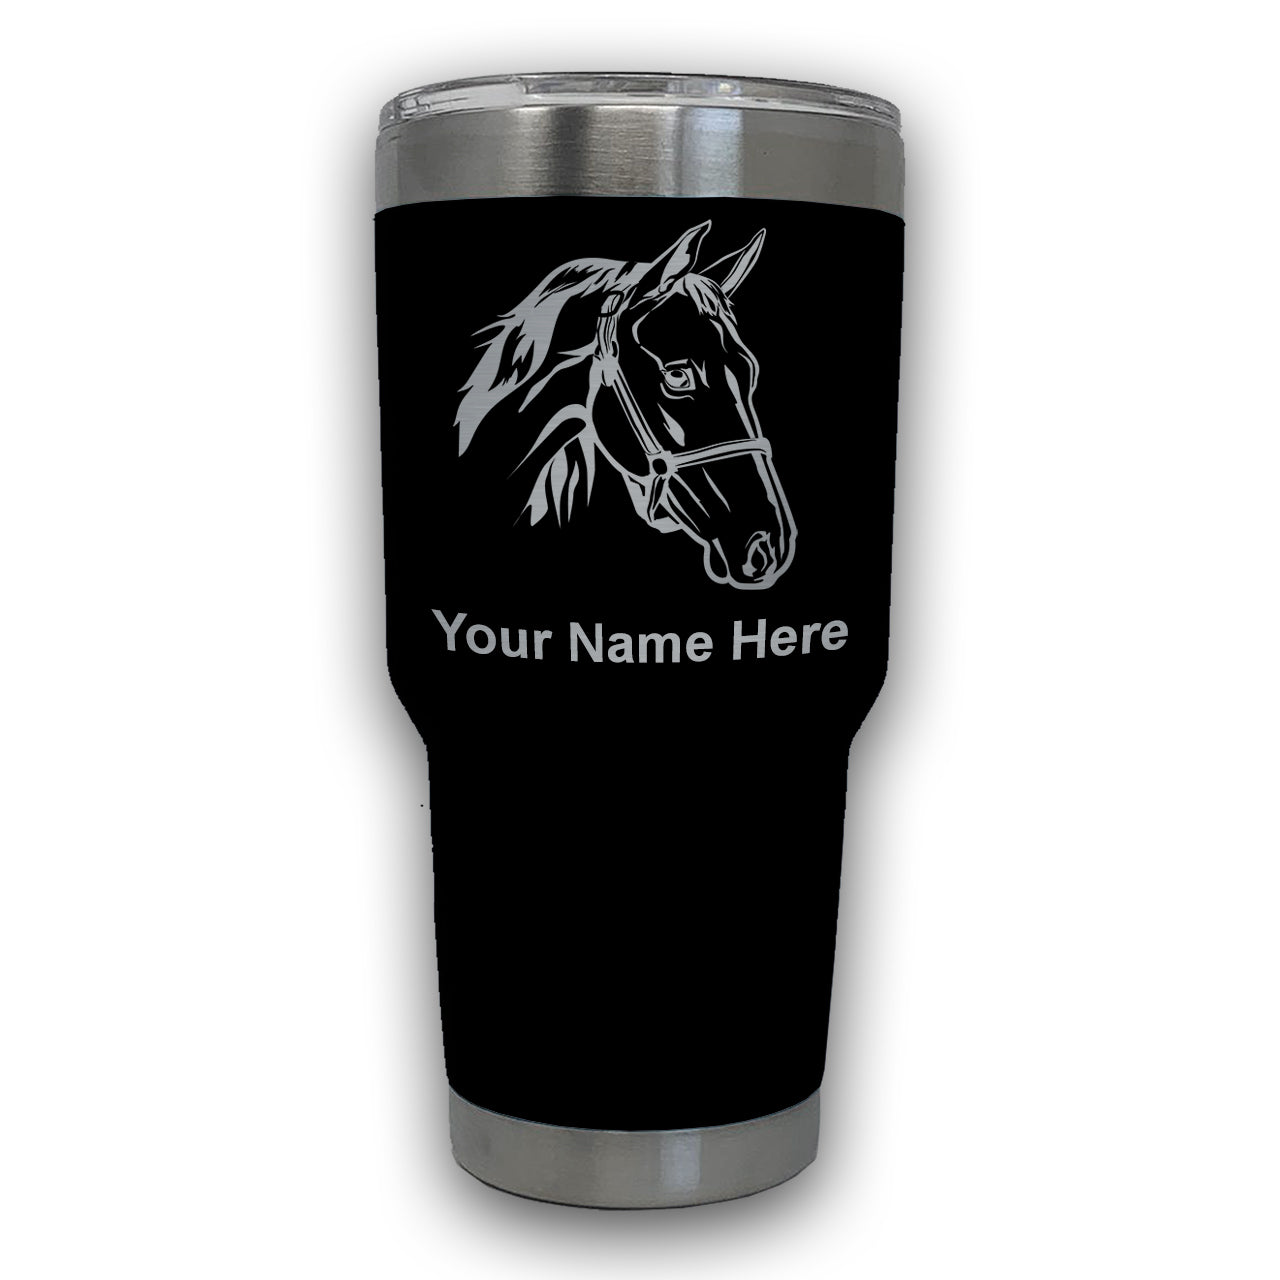 LaserGram 30oz Tumbler Mug, Horse Head 2, Personalized Engraving Included